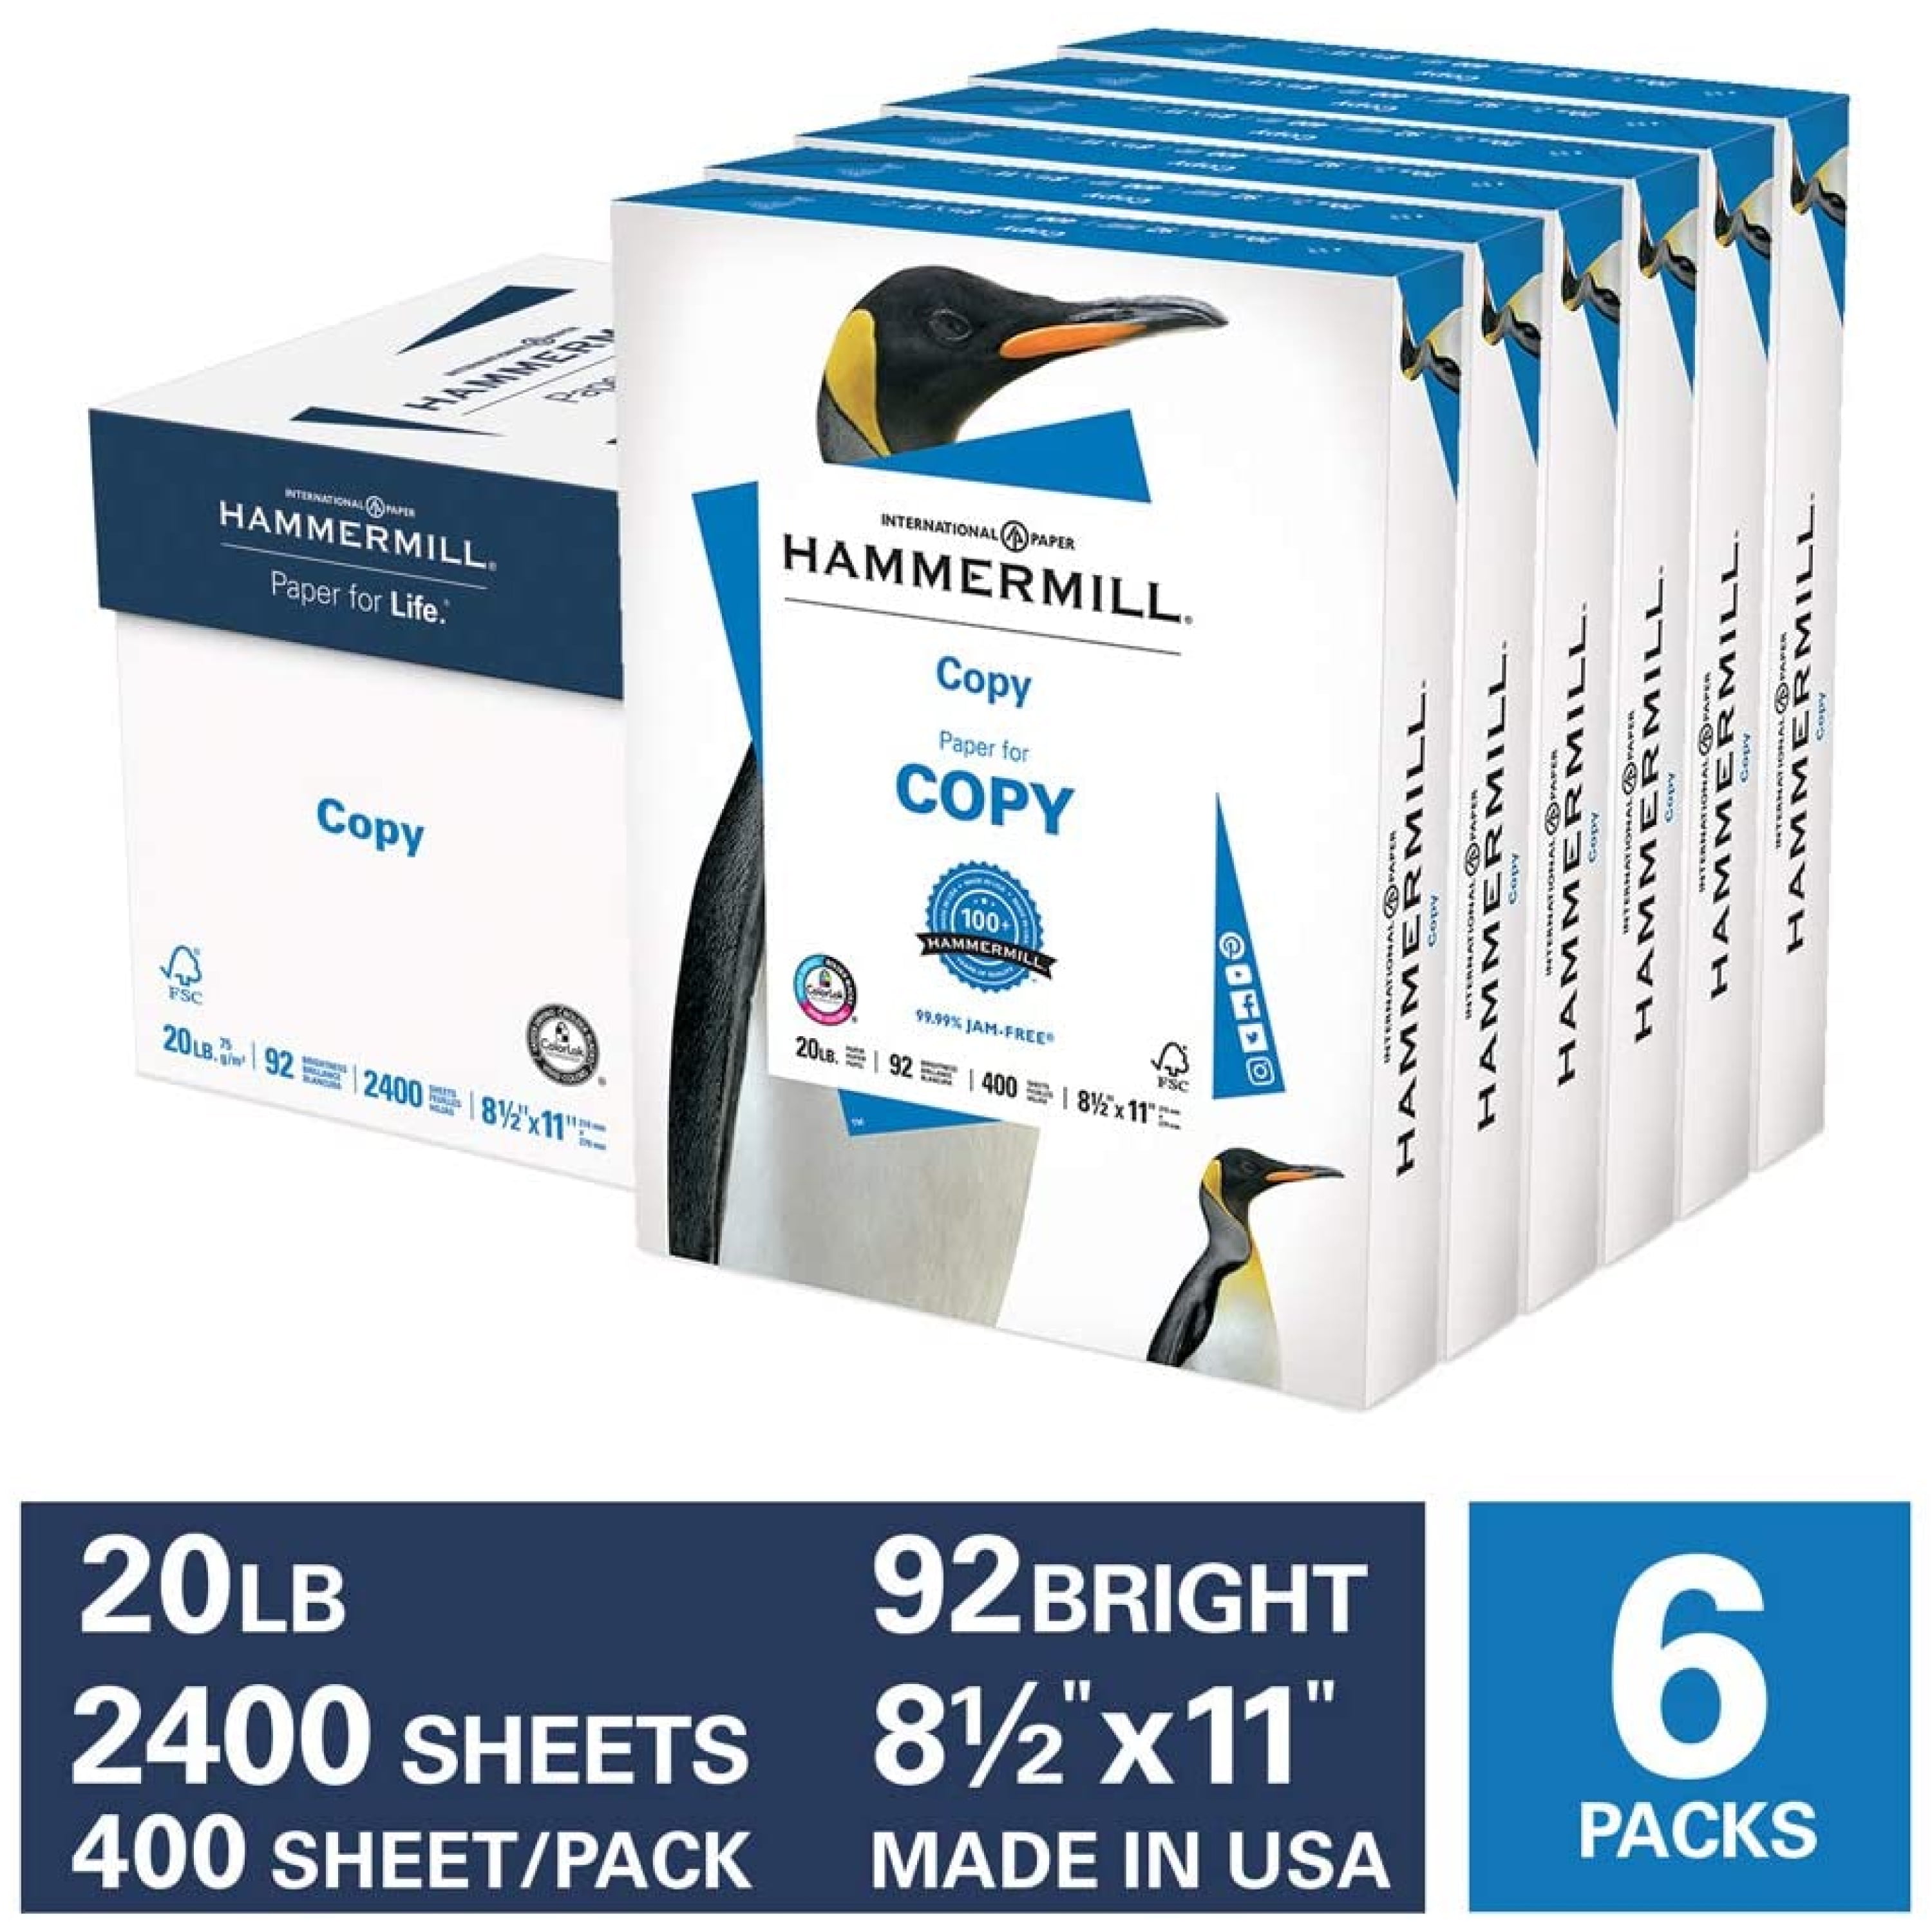 HP Printer Paper | 8.5 x 11 Paper | Copy &Print 20 lb | 4 Bulk Pack Case -  3000 Sheets | 92 Bright | Made in USA - FSC Certified | 200030C